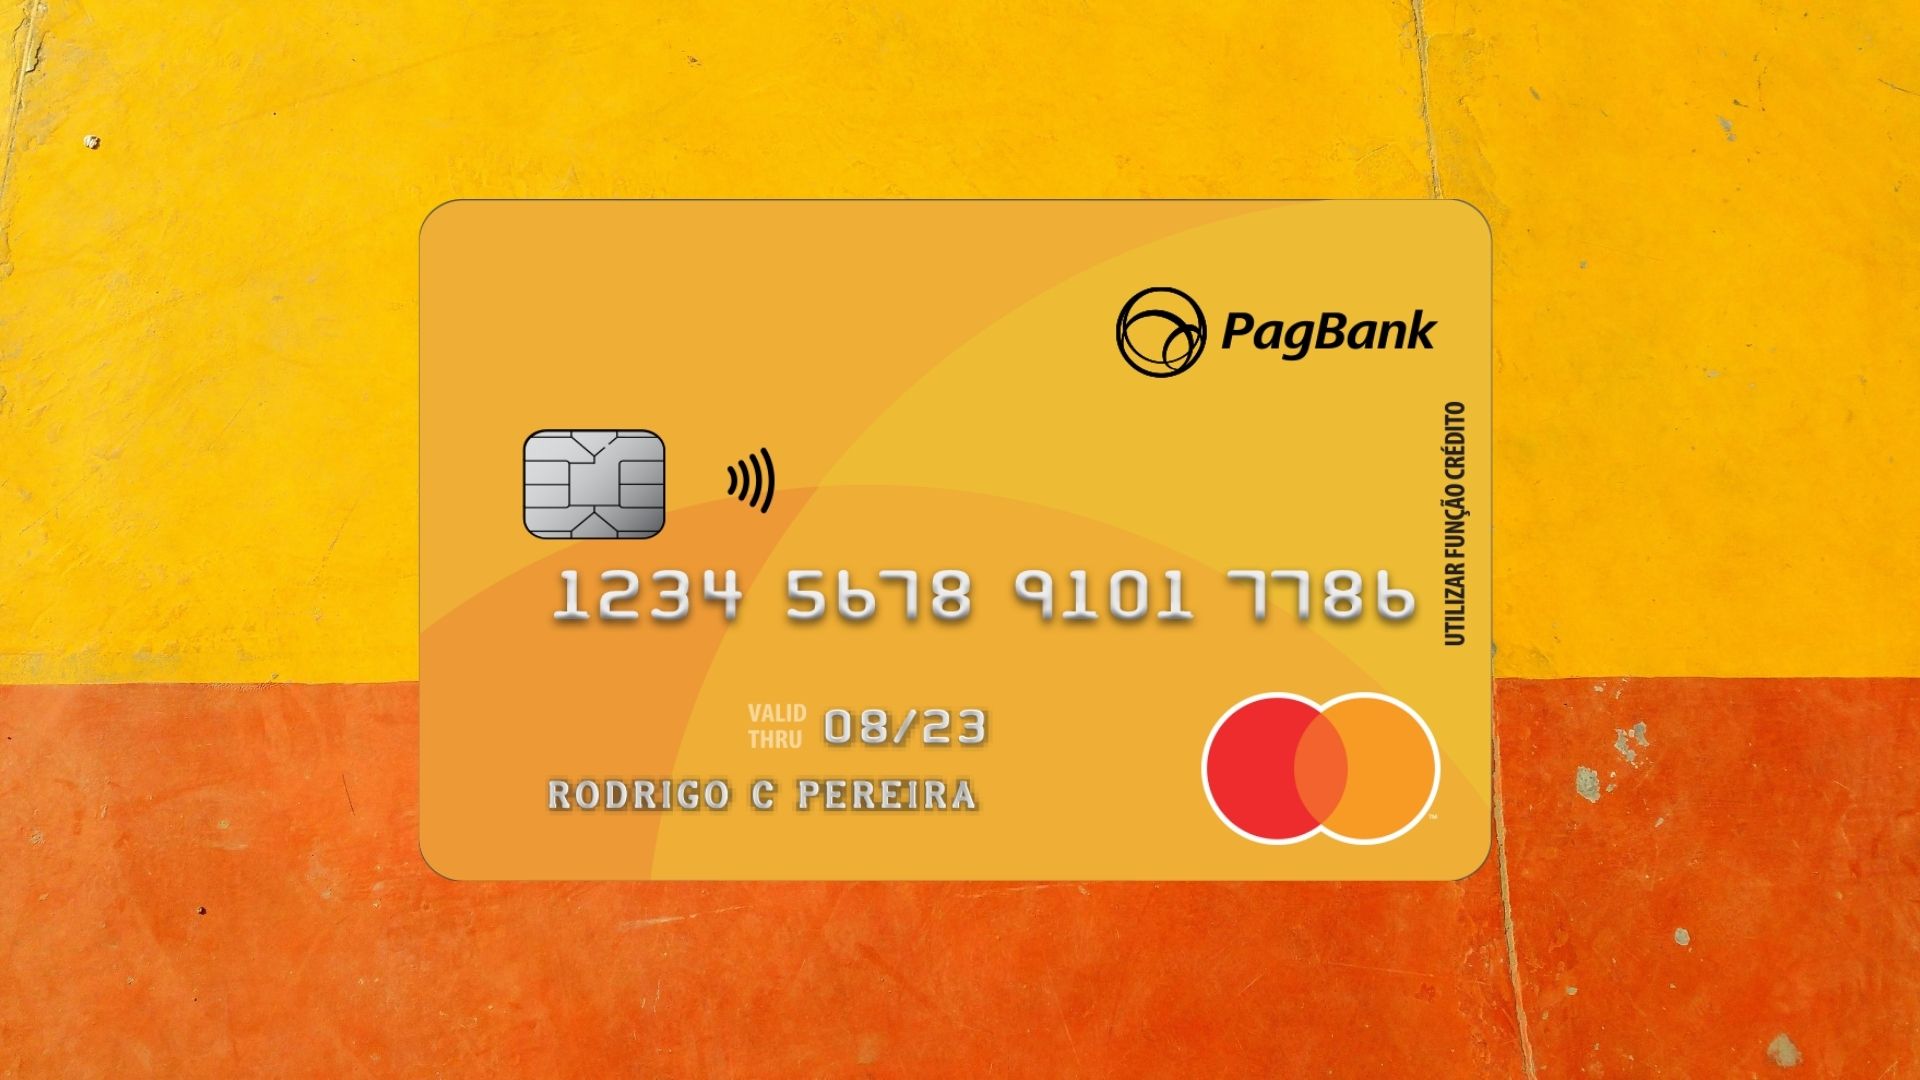 Você sabe como desbloquear o cartão PagBank? Fonte: PagBank.